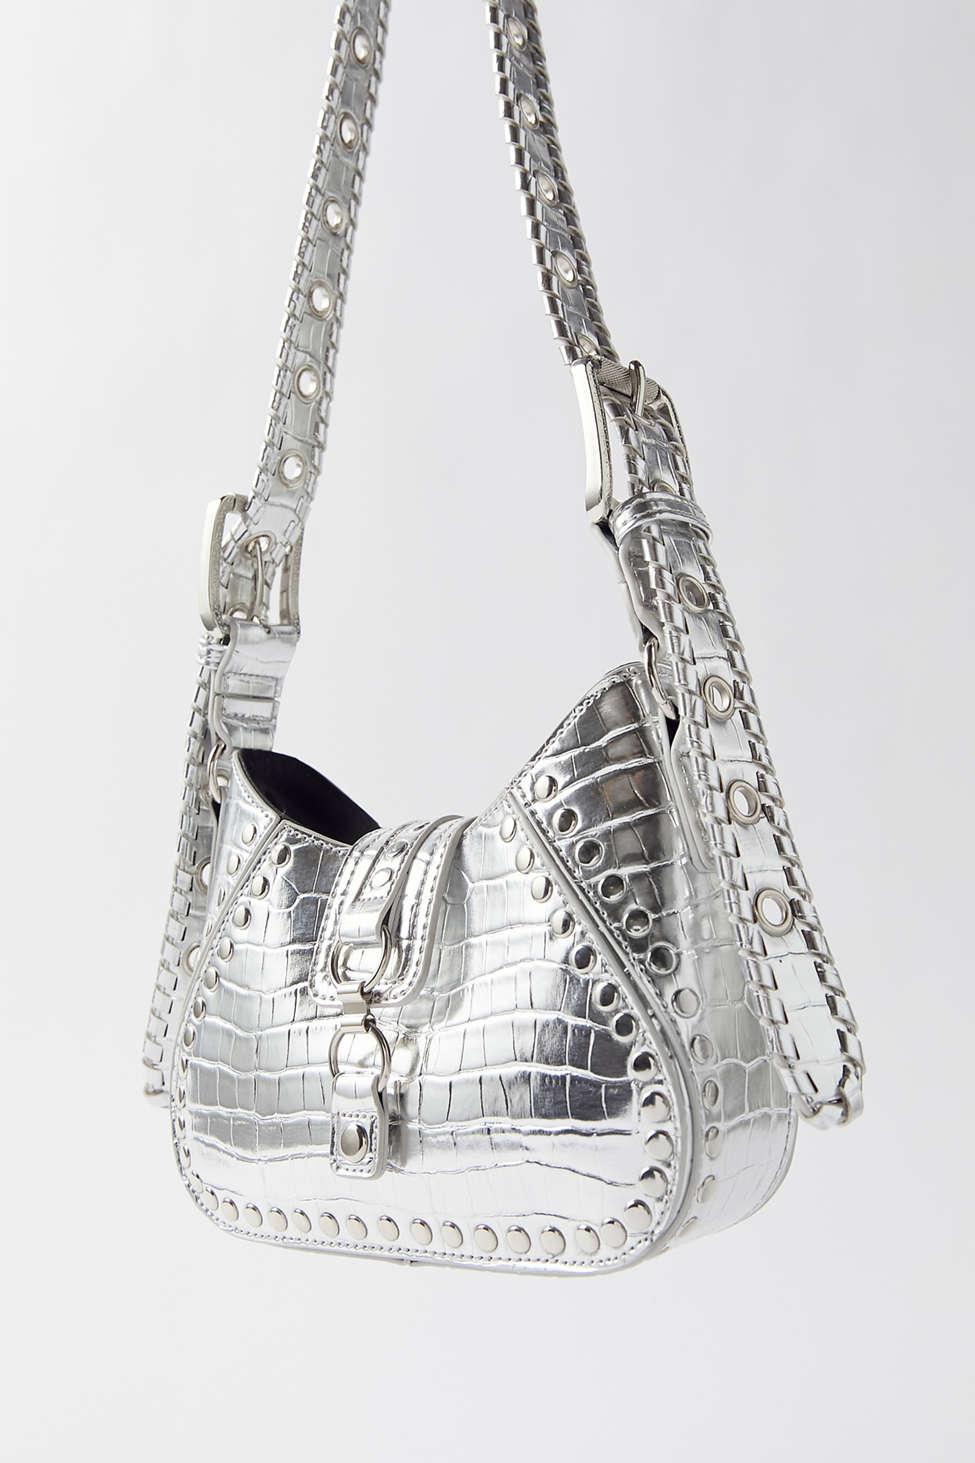 silver handbags